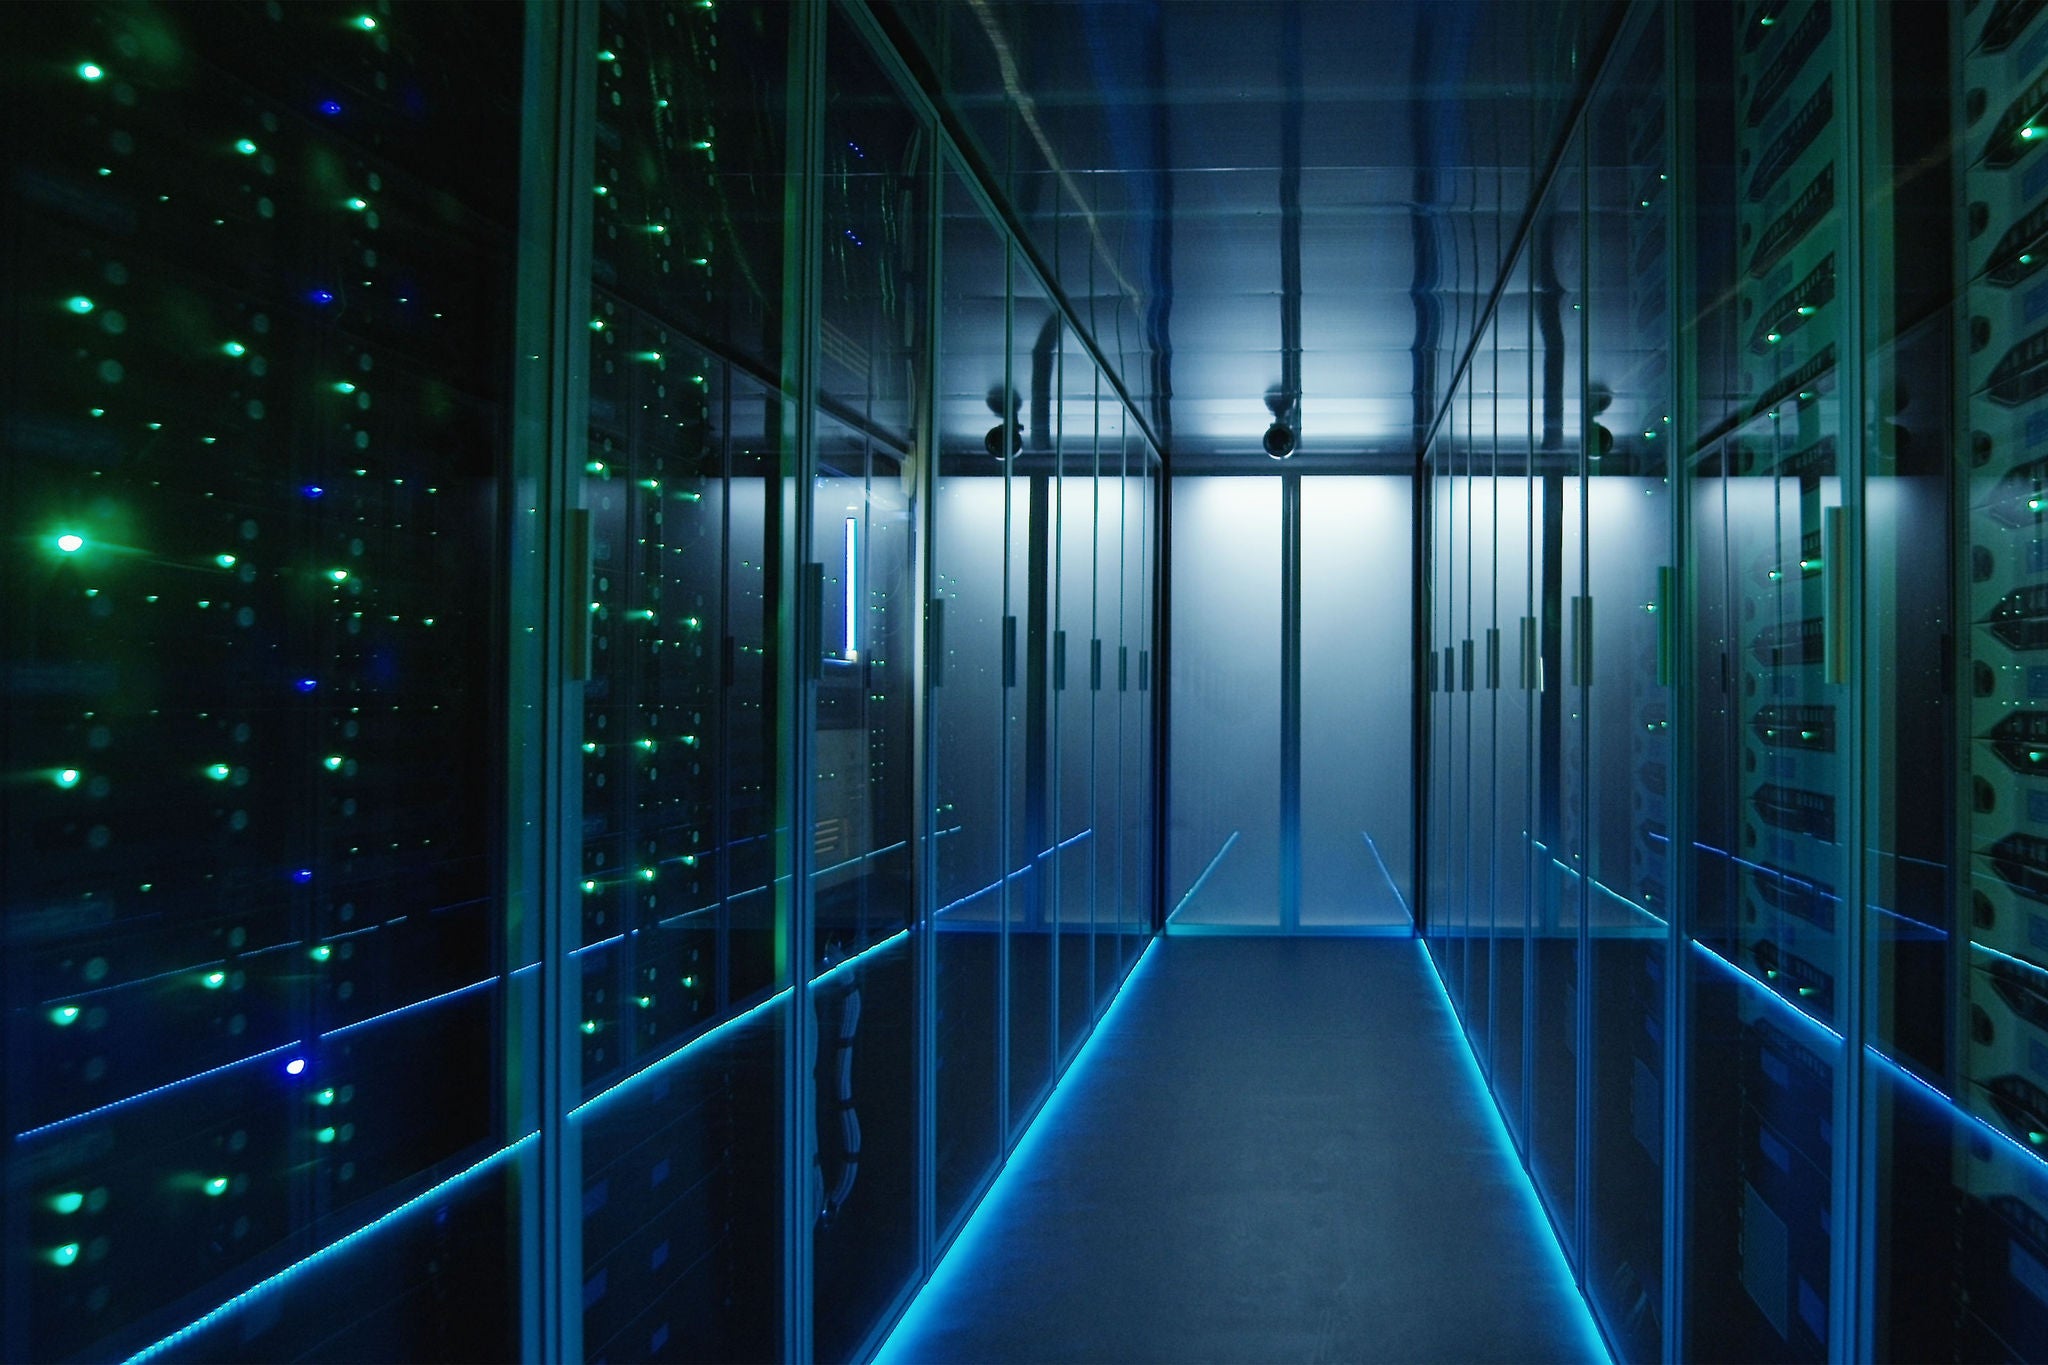 Long hallway full server racks in a modern data center